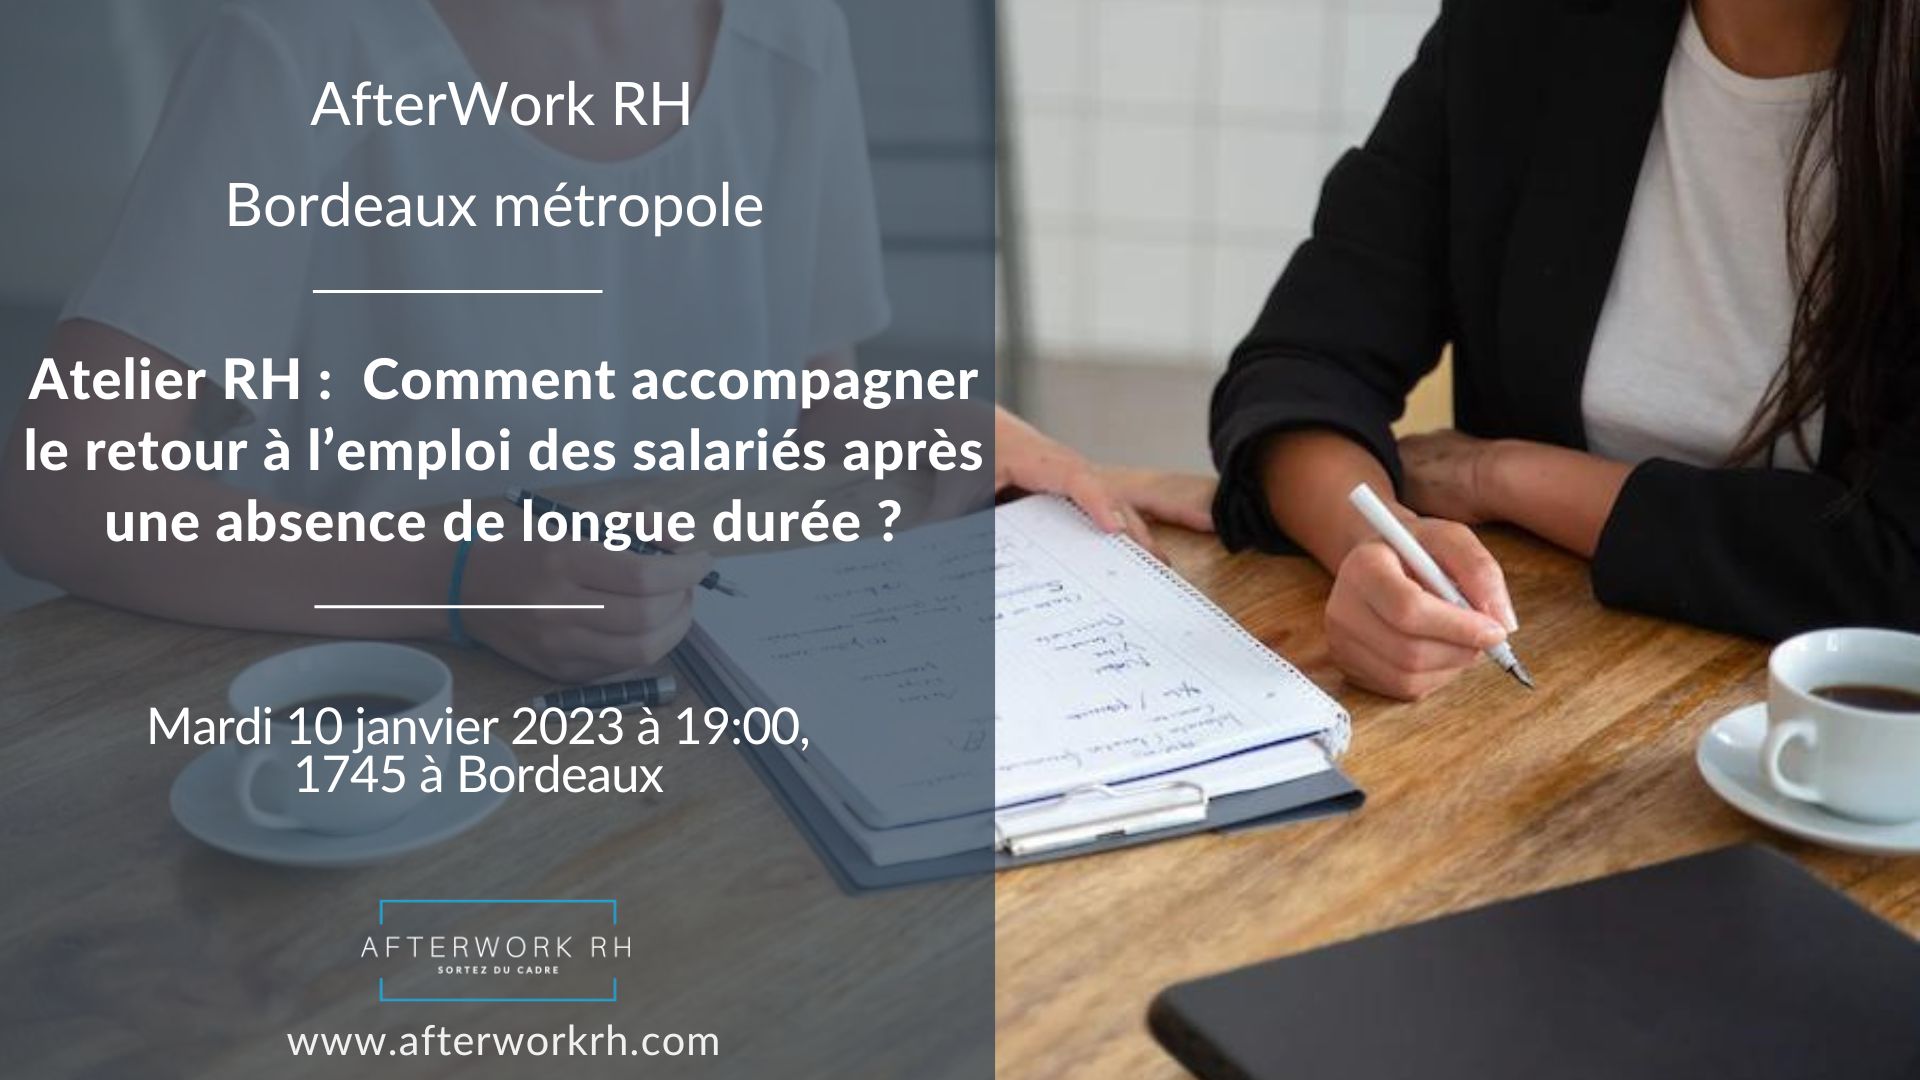 AfterWork RH Bordeaux - janvier 23 - accompagnement du salarié vers le retour à l'emploi après une absence de longue durée